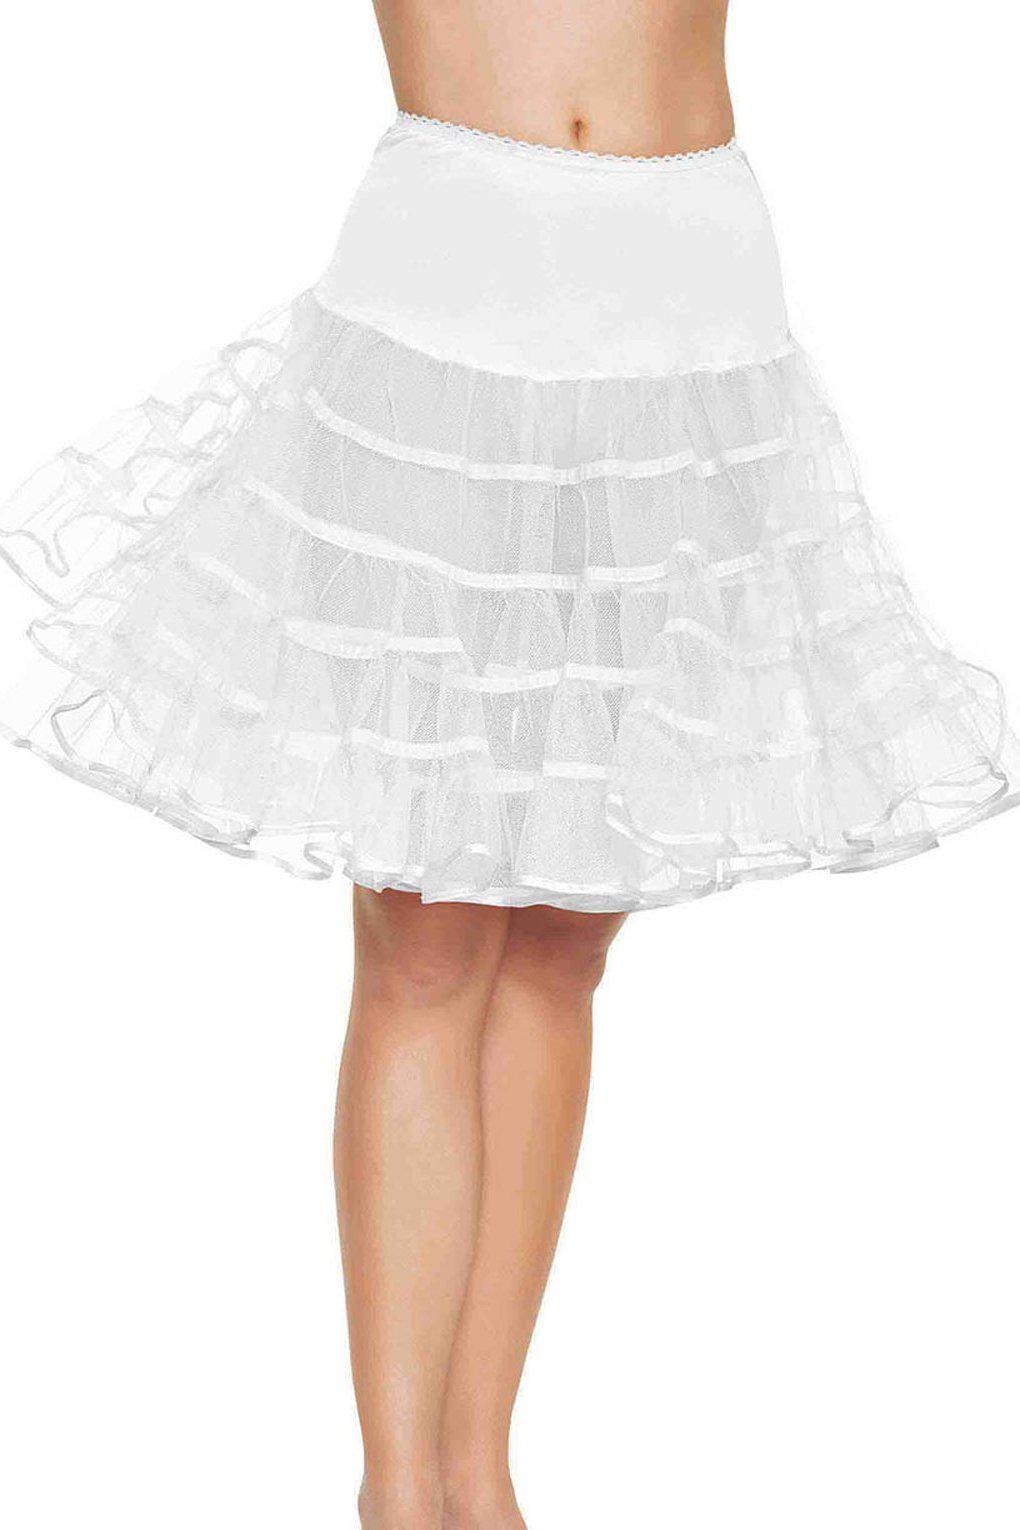 Mid-Length Petticoat-TuTu + Petticoat-Leg Avenue-White-O/S-SEXYSHOES.COM